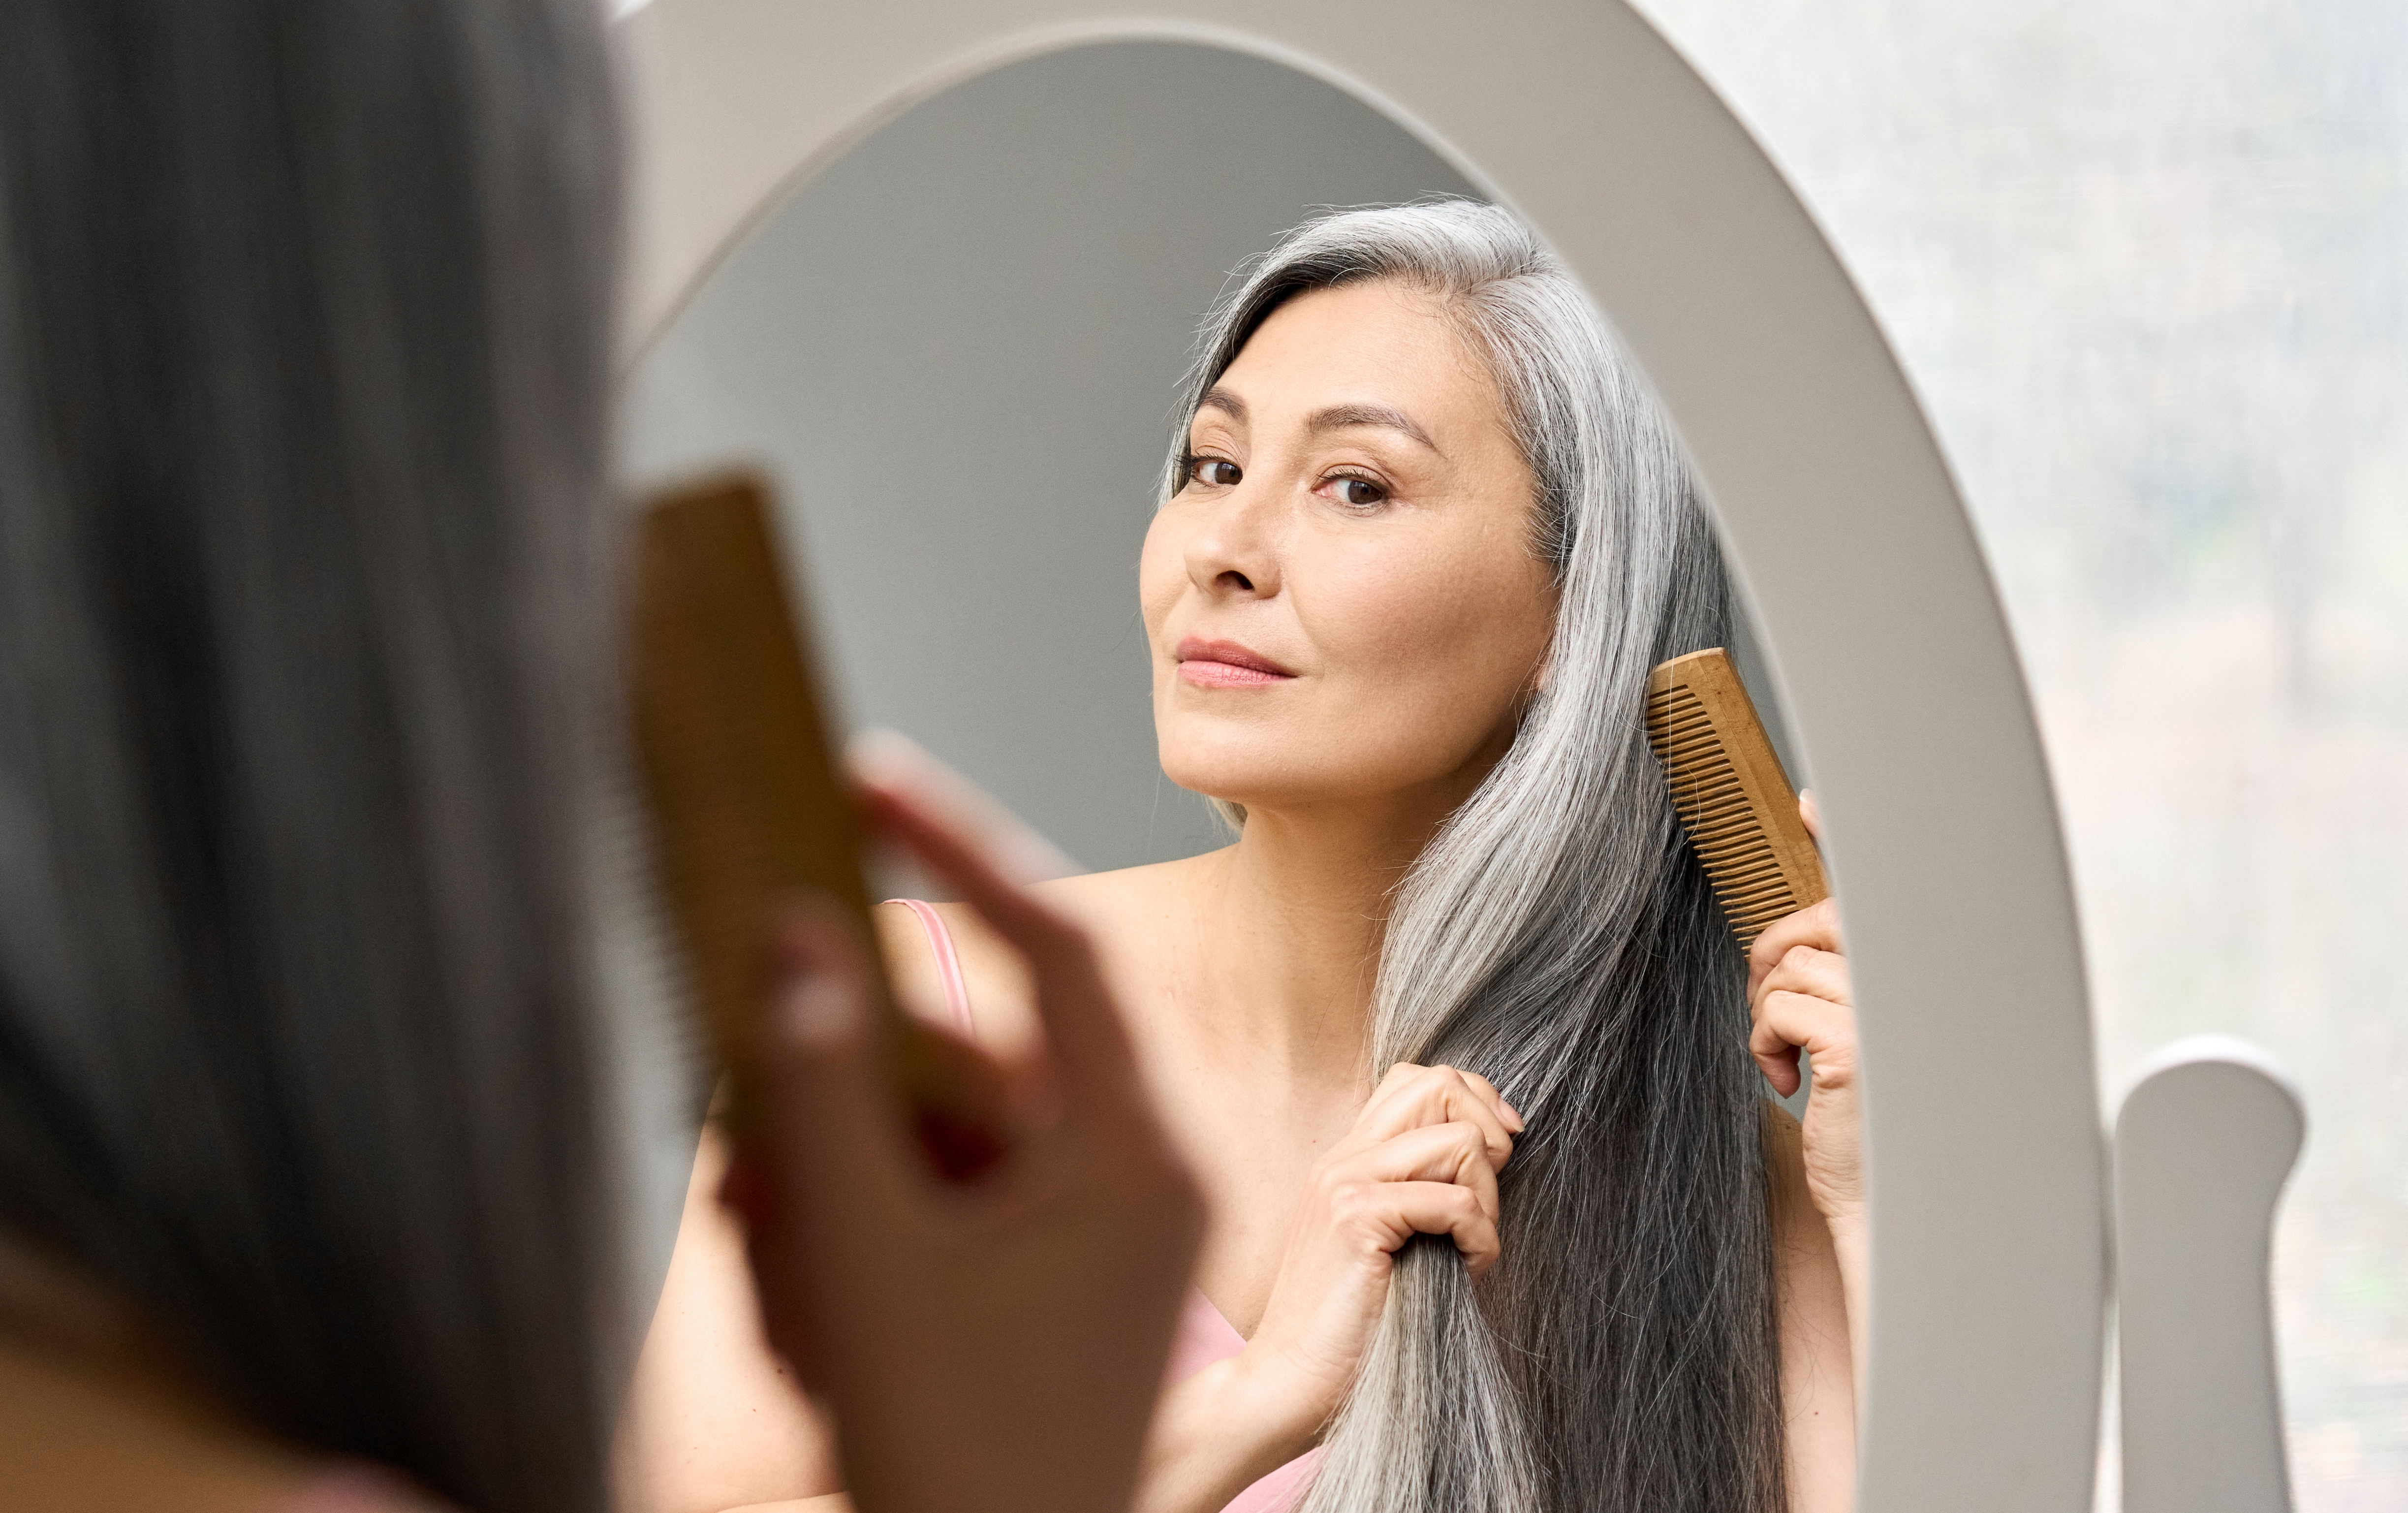 Femme aux cheveux gris peignant ses cheveux. | Source : Shutterstock